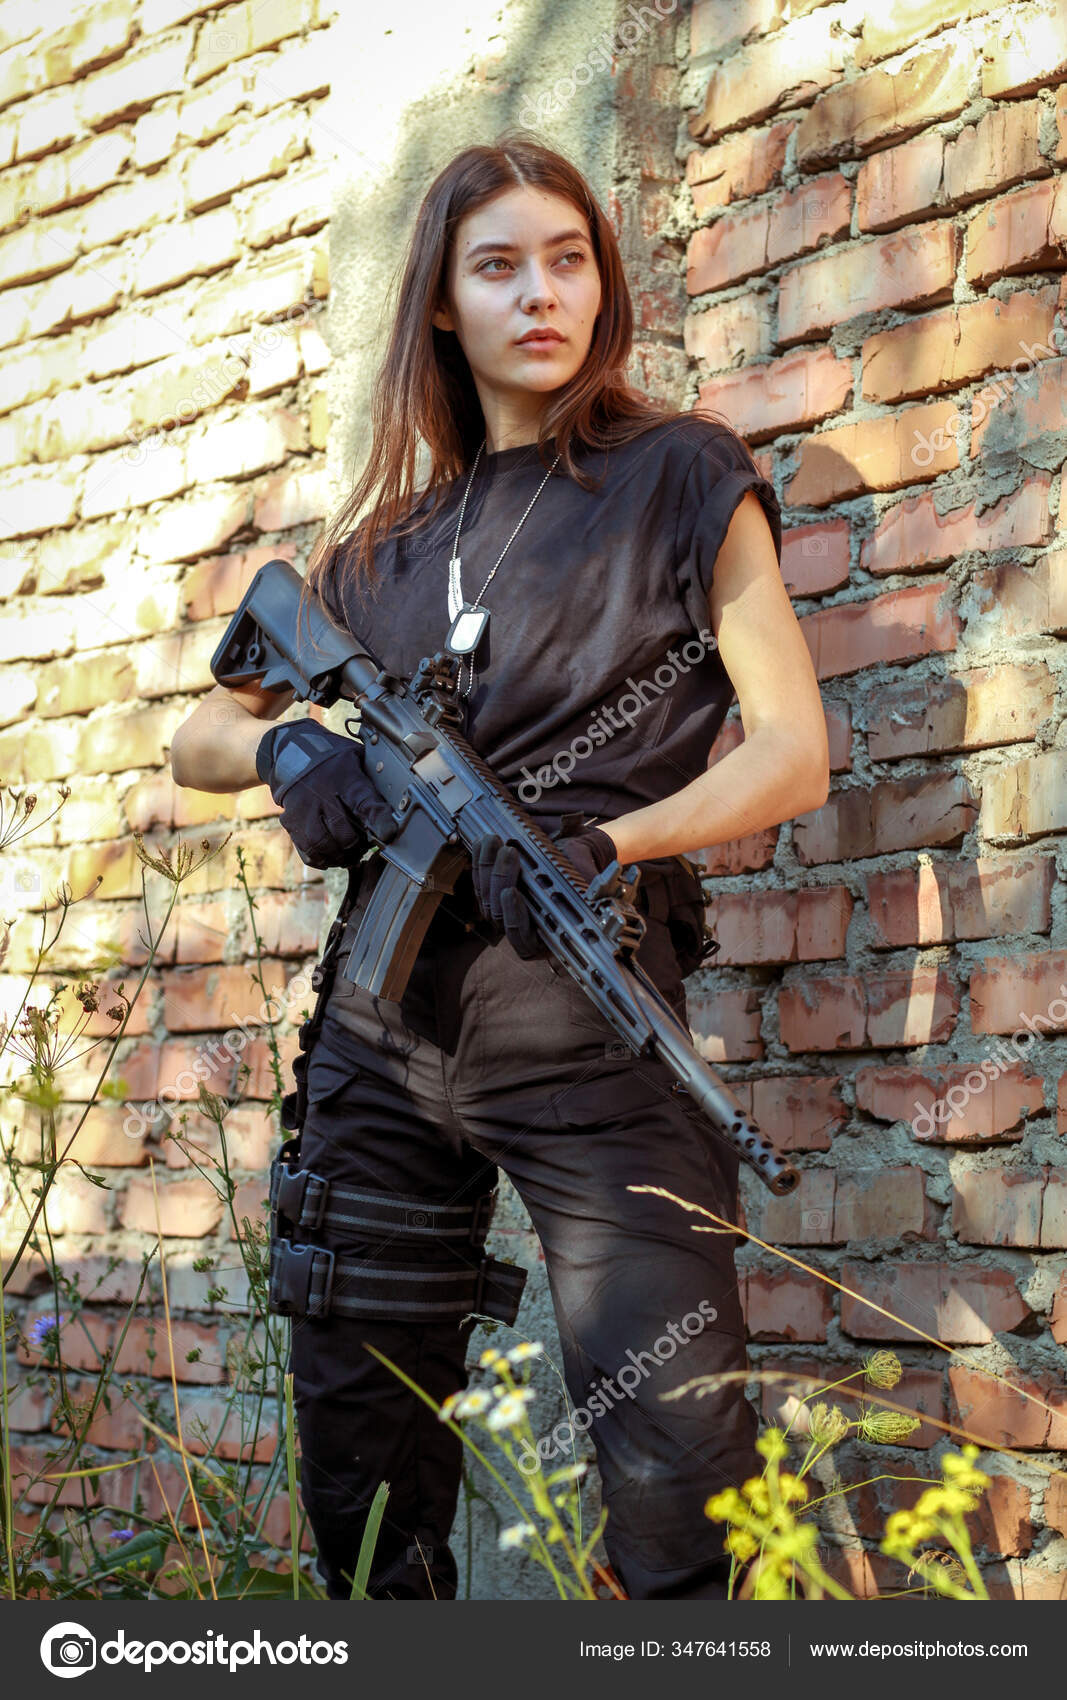 https://st3.depositphotos.com/12852350/34764/i/1600/depositphotos_347641558-stock-photo-girl-tactical-clothes-gun-military.jpg